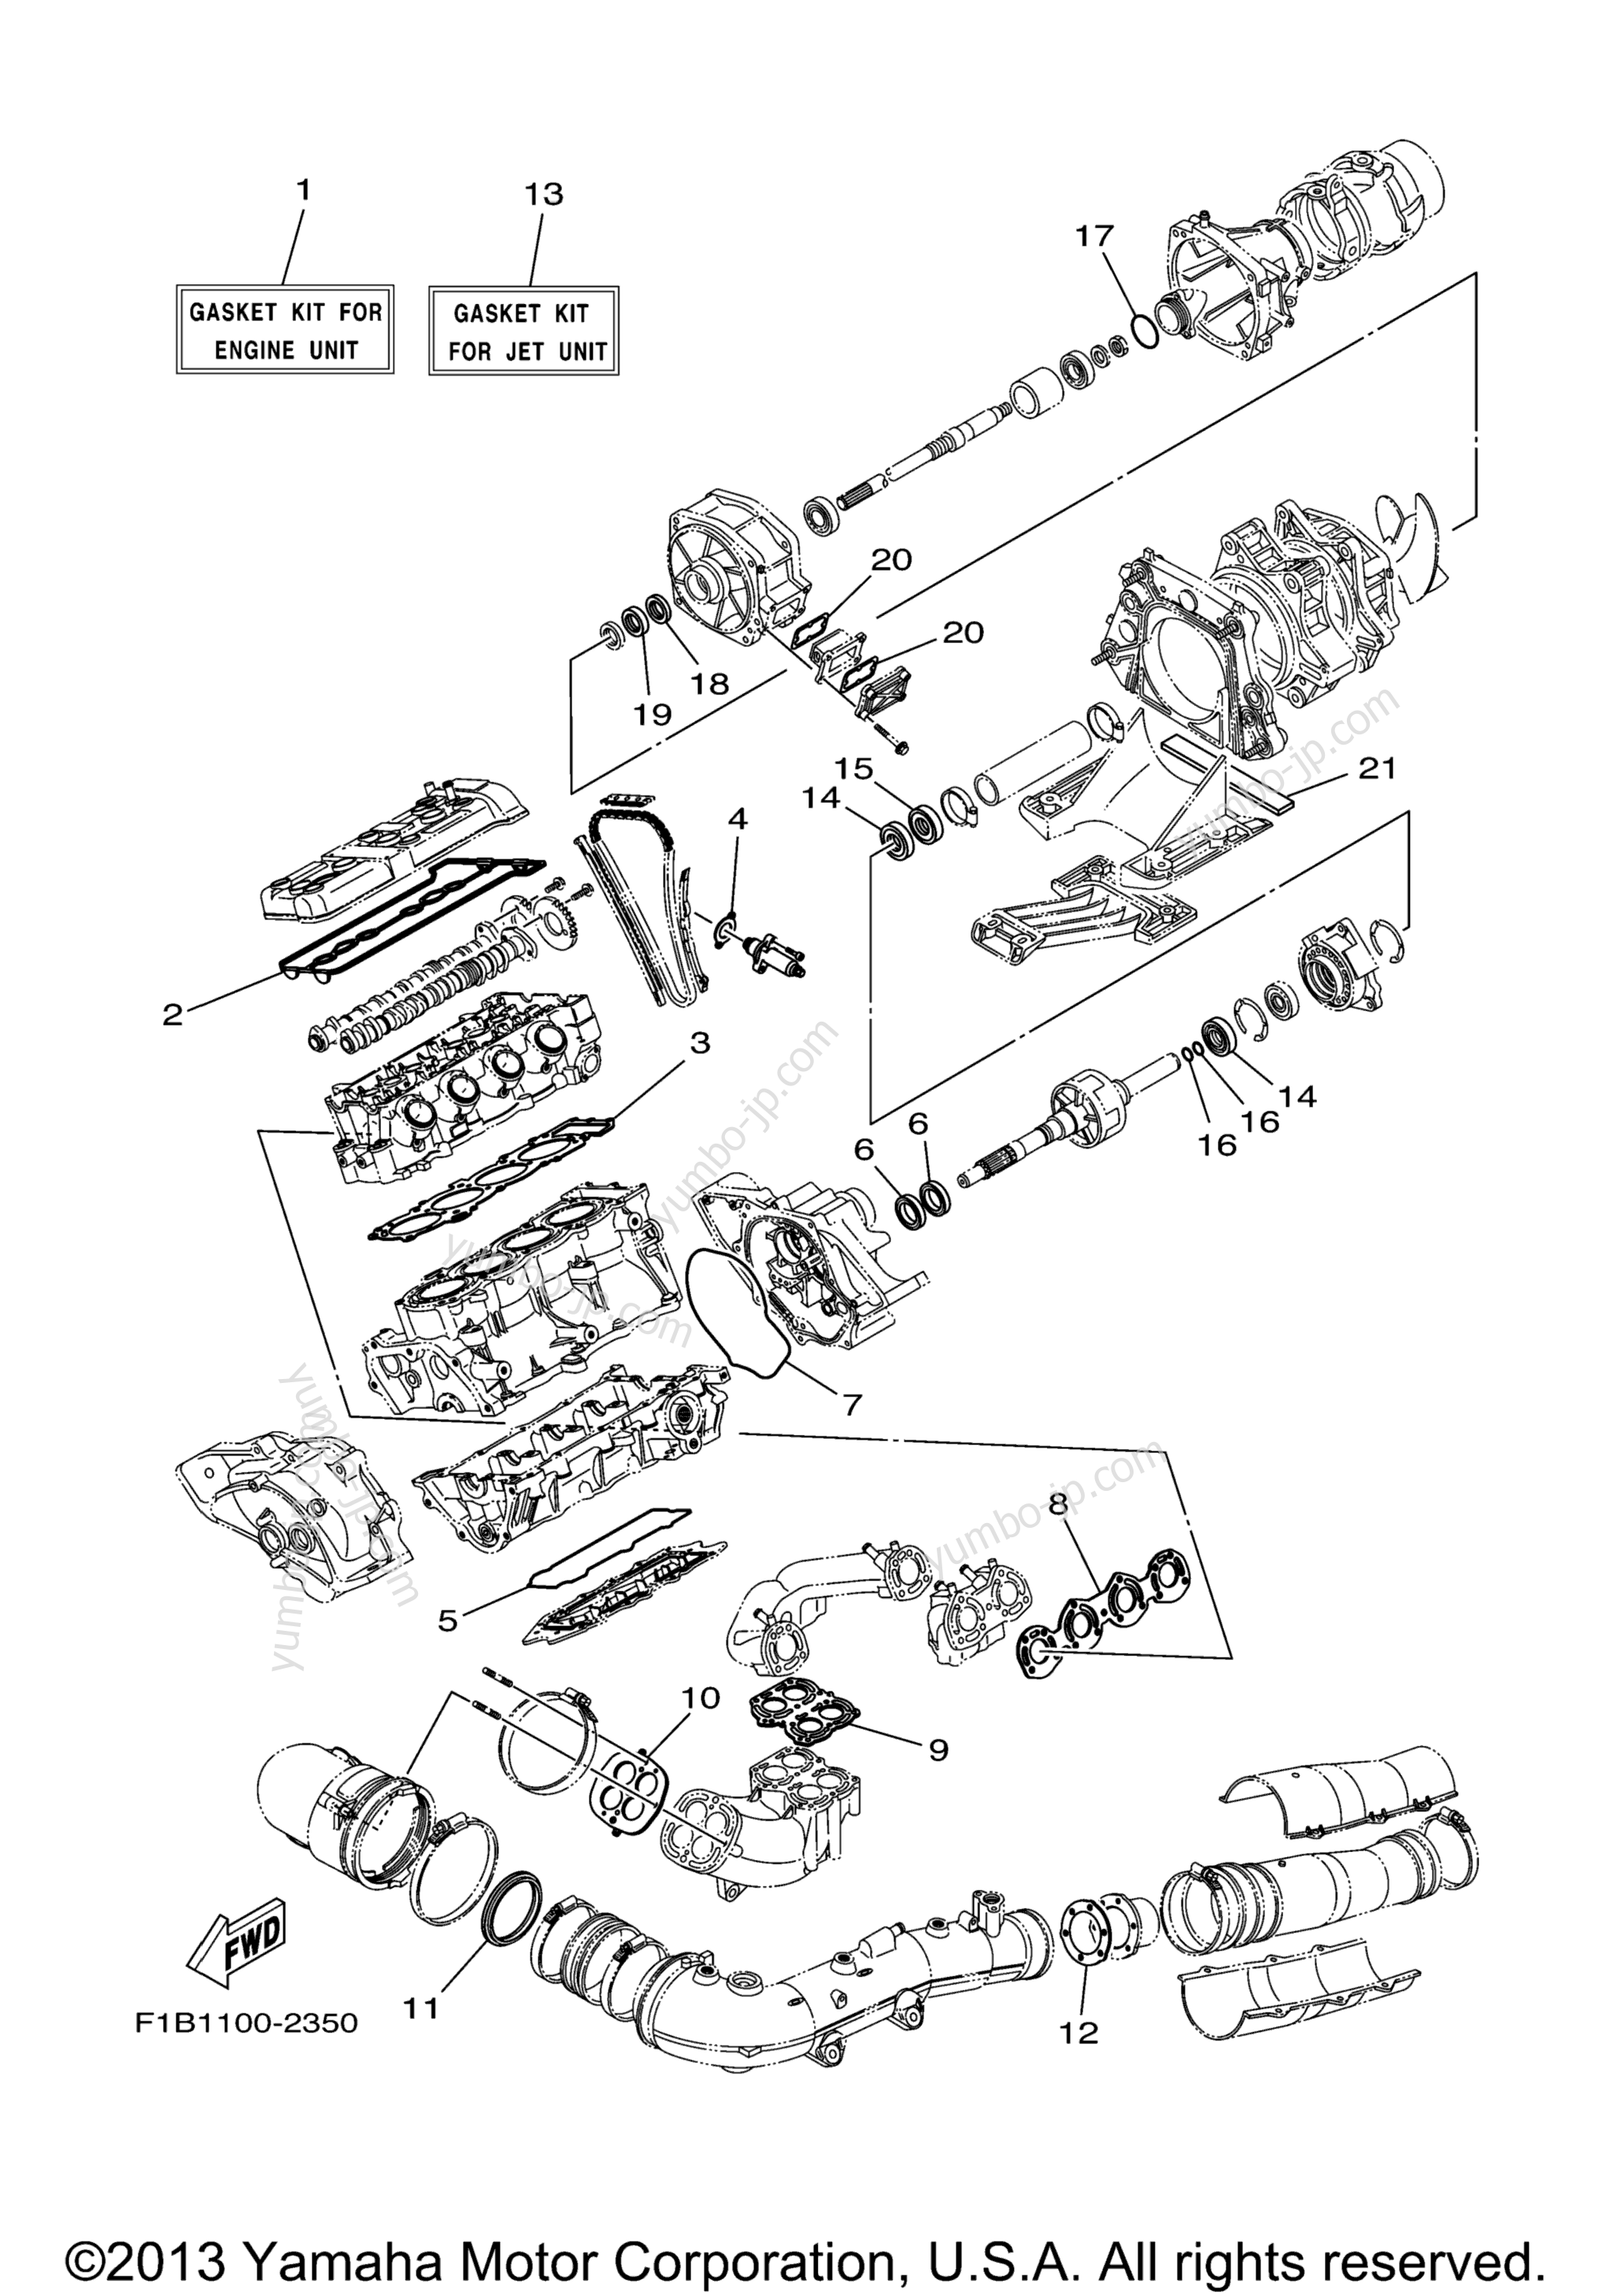 Repair Kit 1 для гидроциклов YAMAHA FX140 (FX1000C) 2004 г.